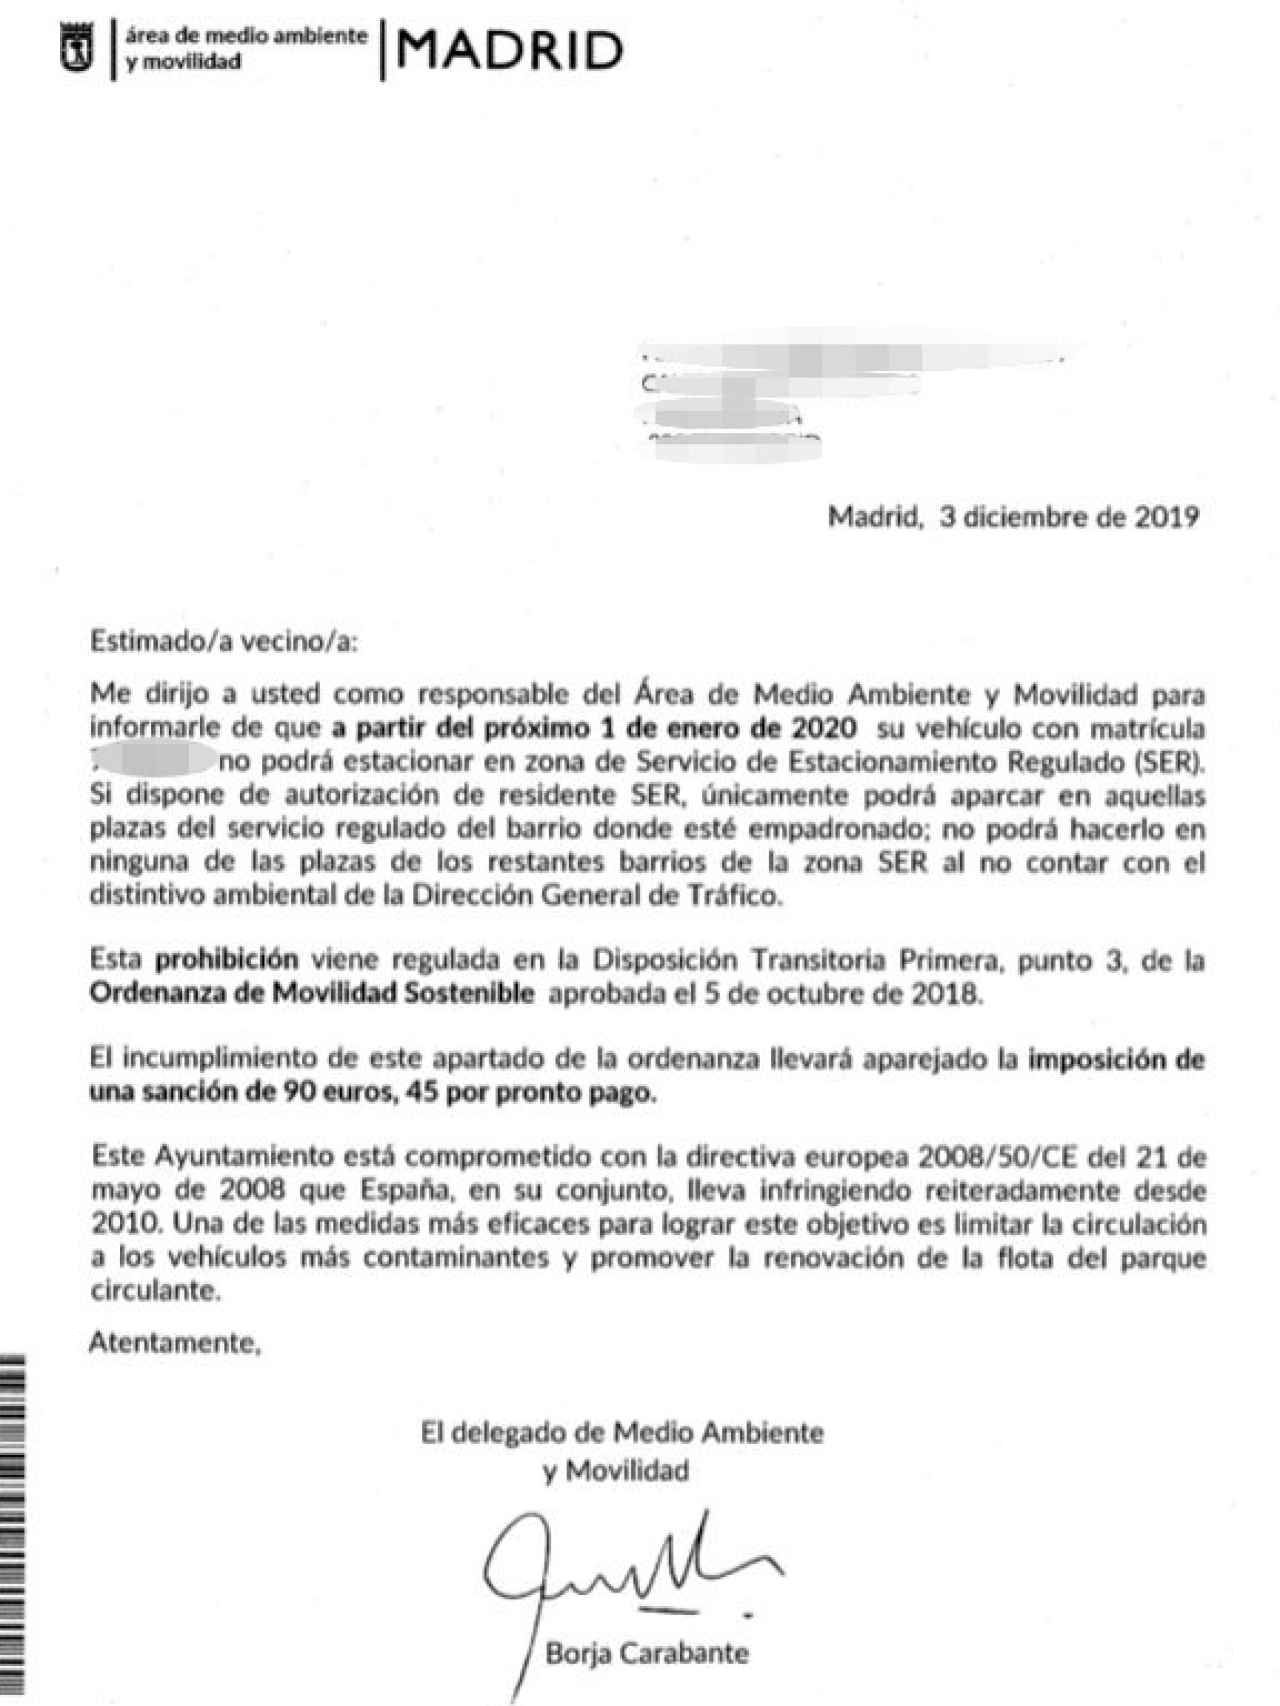 La carta de información enviada por el Ayuntamiento de Madrid.